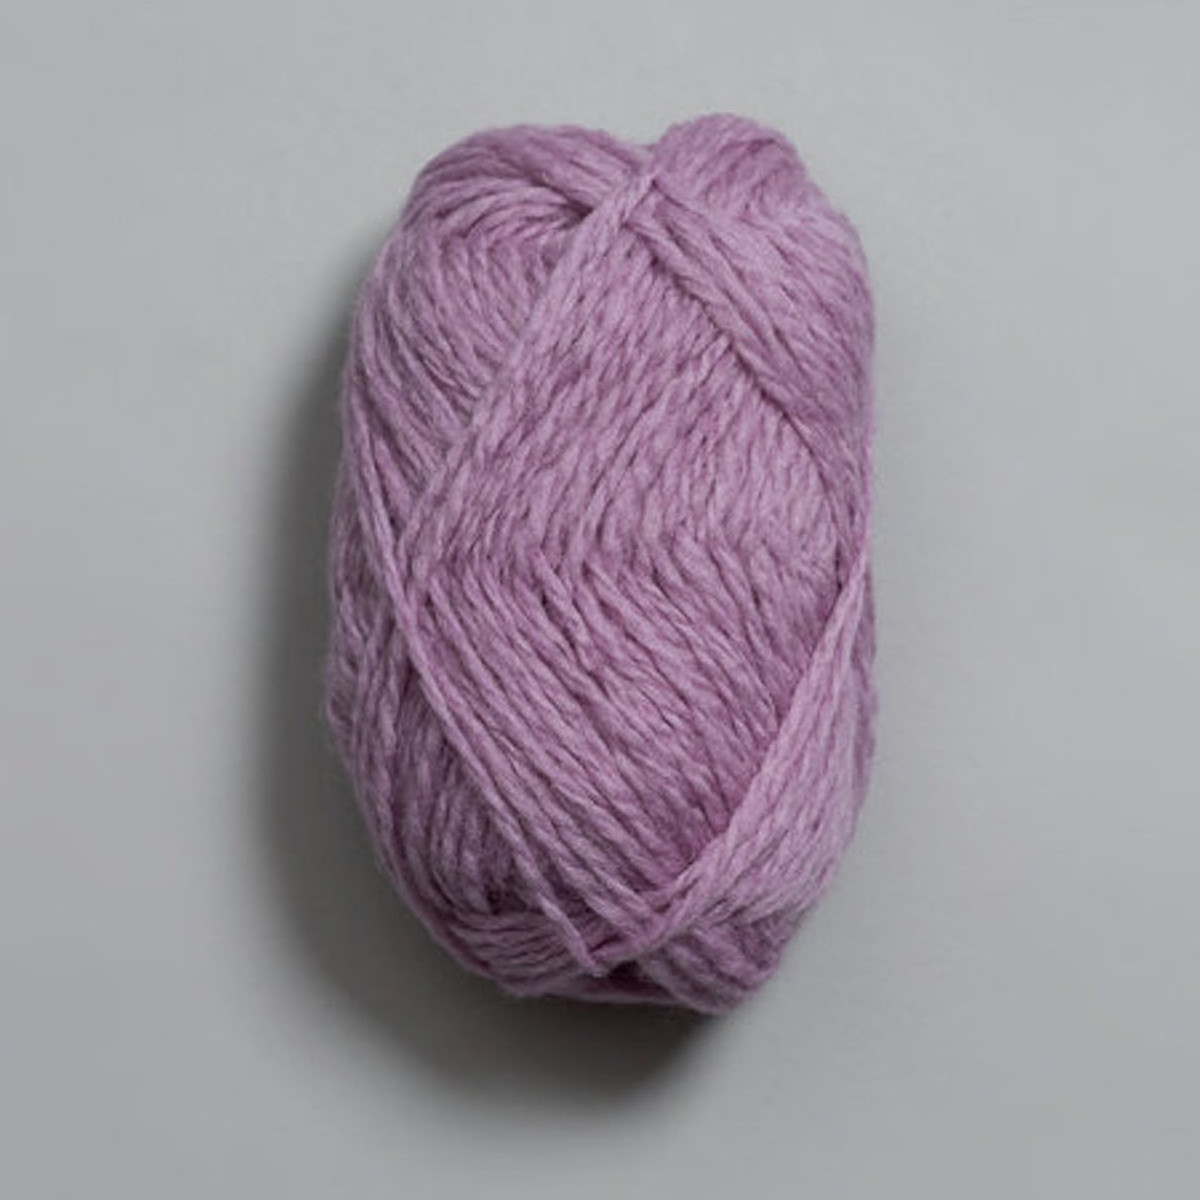 Vams - Lavendel (101)